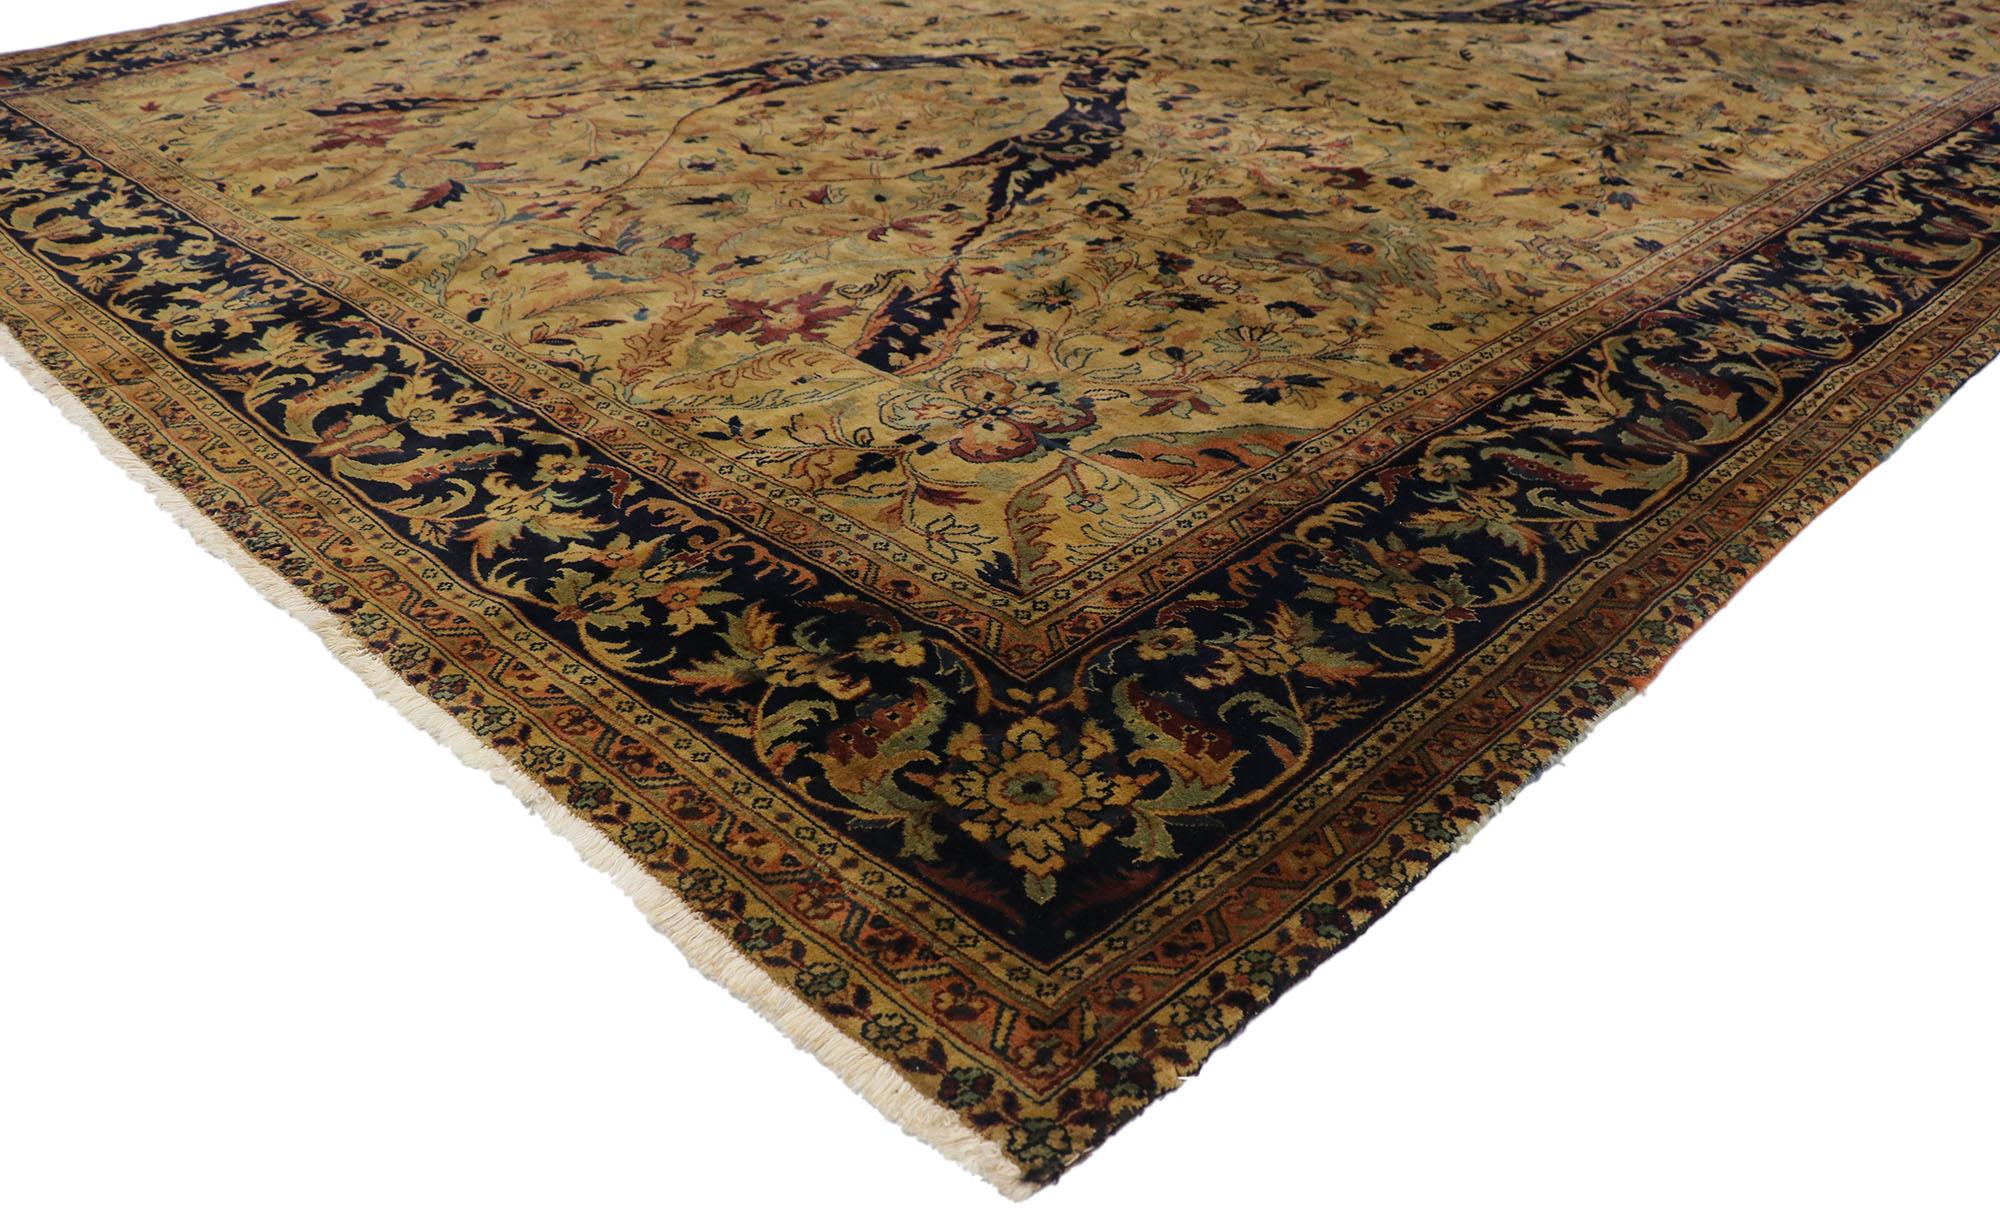 77606, tapis indien vintage au style Arts & Crafts chaleureux. Avec son design intemporel et ses couleurs chaudes dans les tons de la terre, ce tapis indien vintage en laine noué à la main étonne par sa beauté. Il présente un motif botanique en